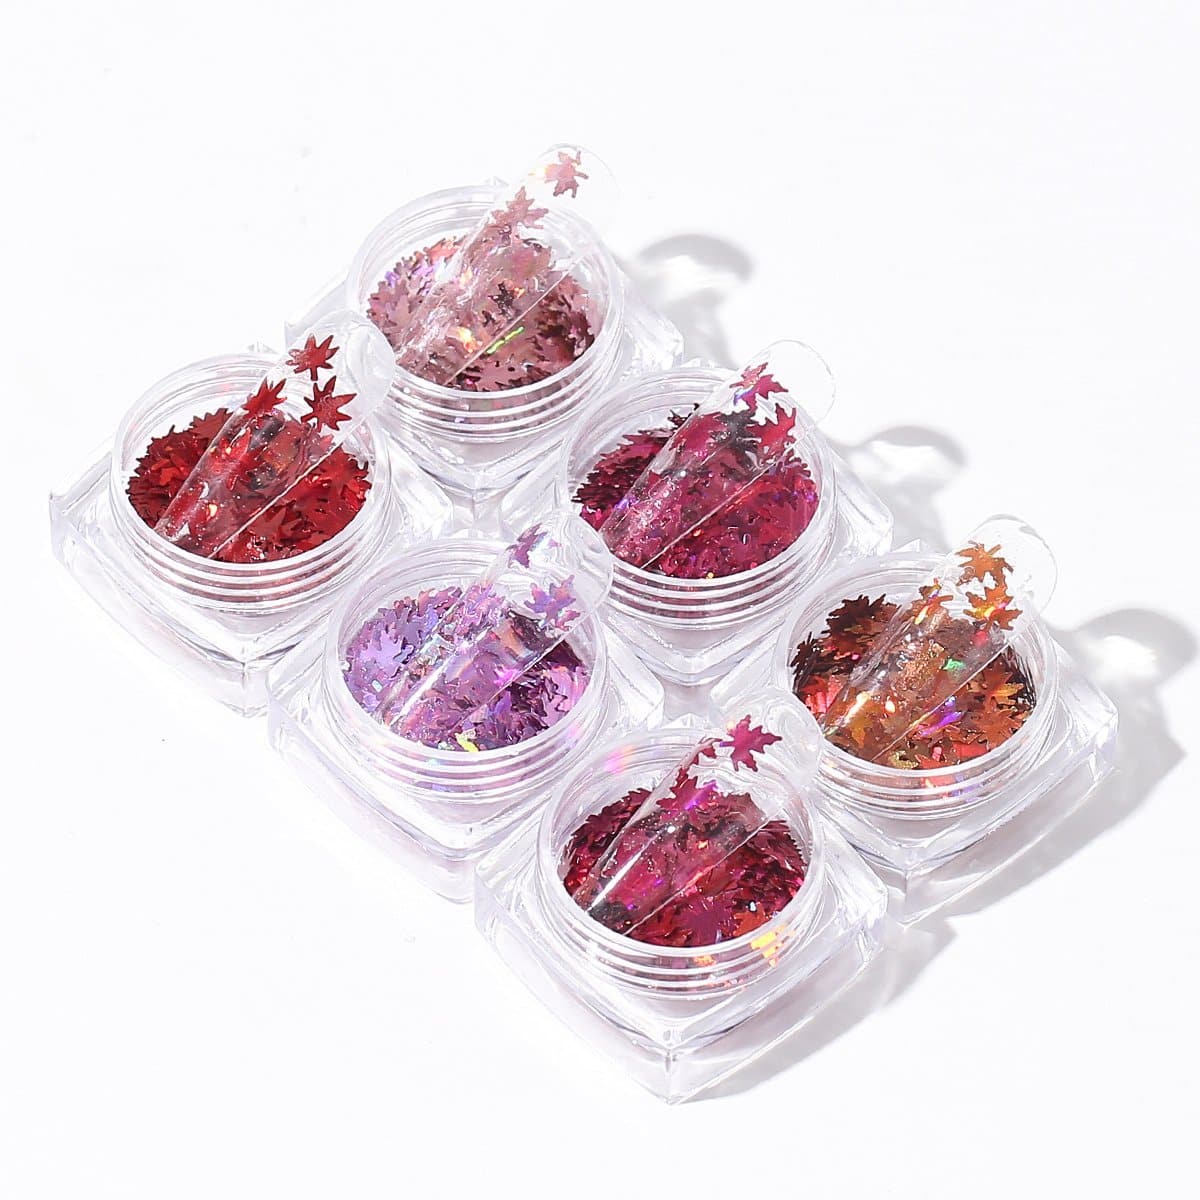 Maple Sequins- Nail Art Glitter Kit - MODELONES.com